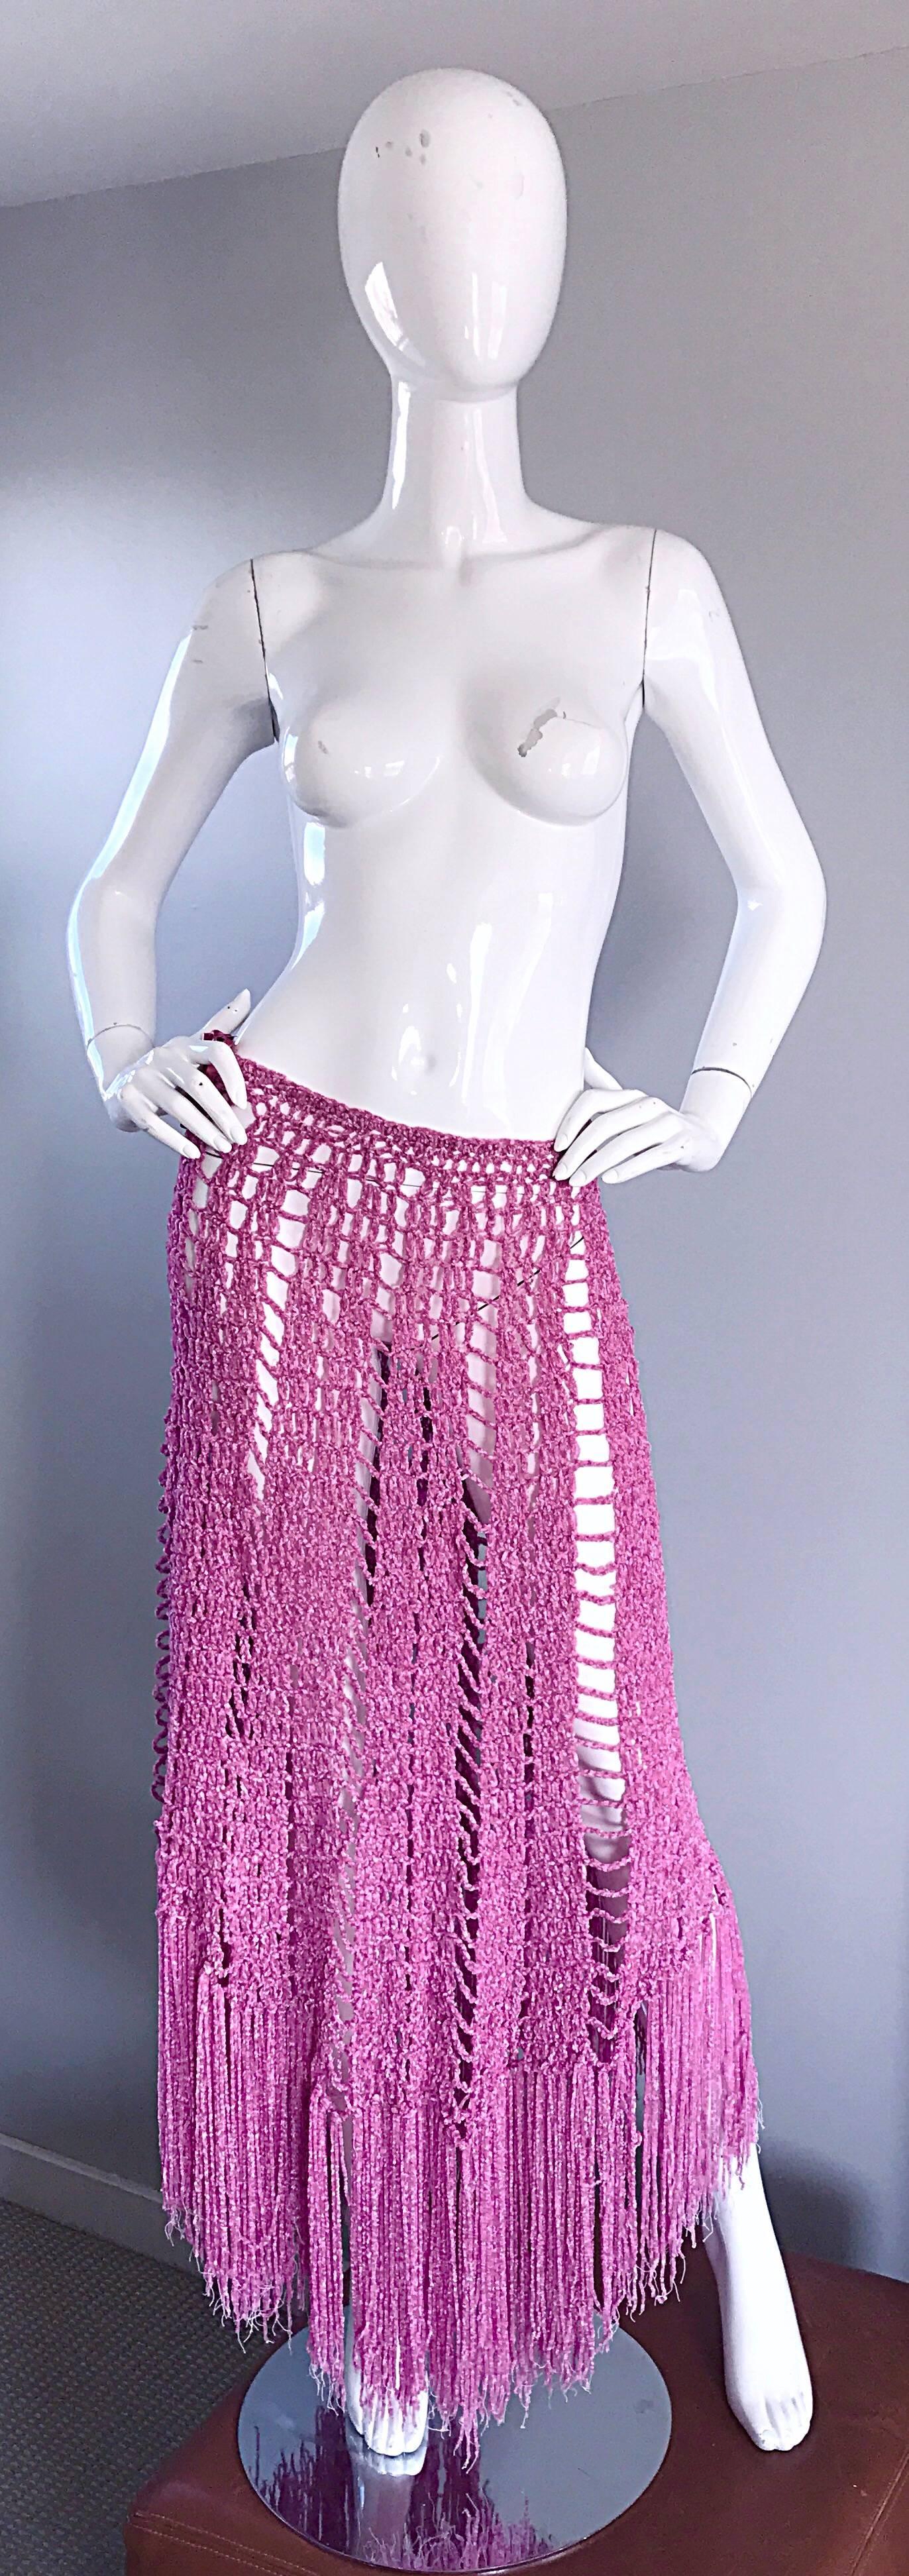 Joseph Magnin 1970s Brand New Pink Vintage Italian Crochet Skirt, Dress or Cape 5